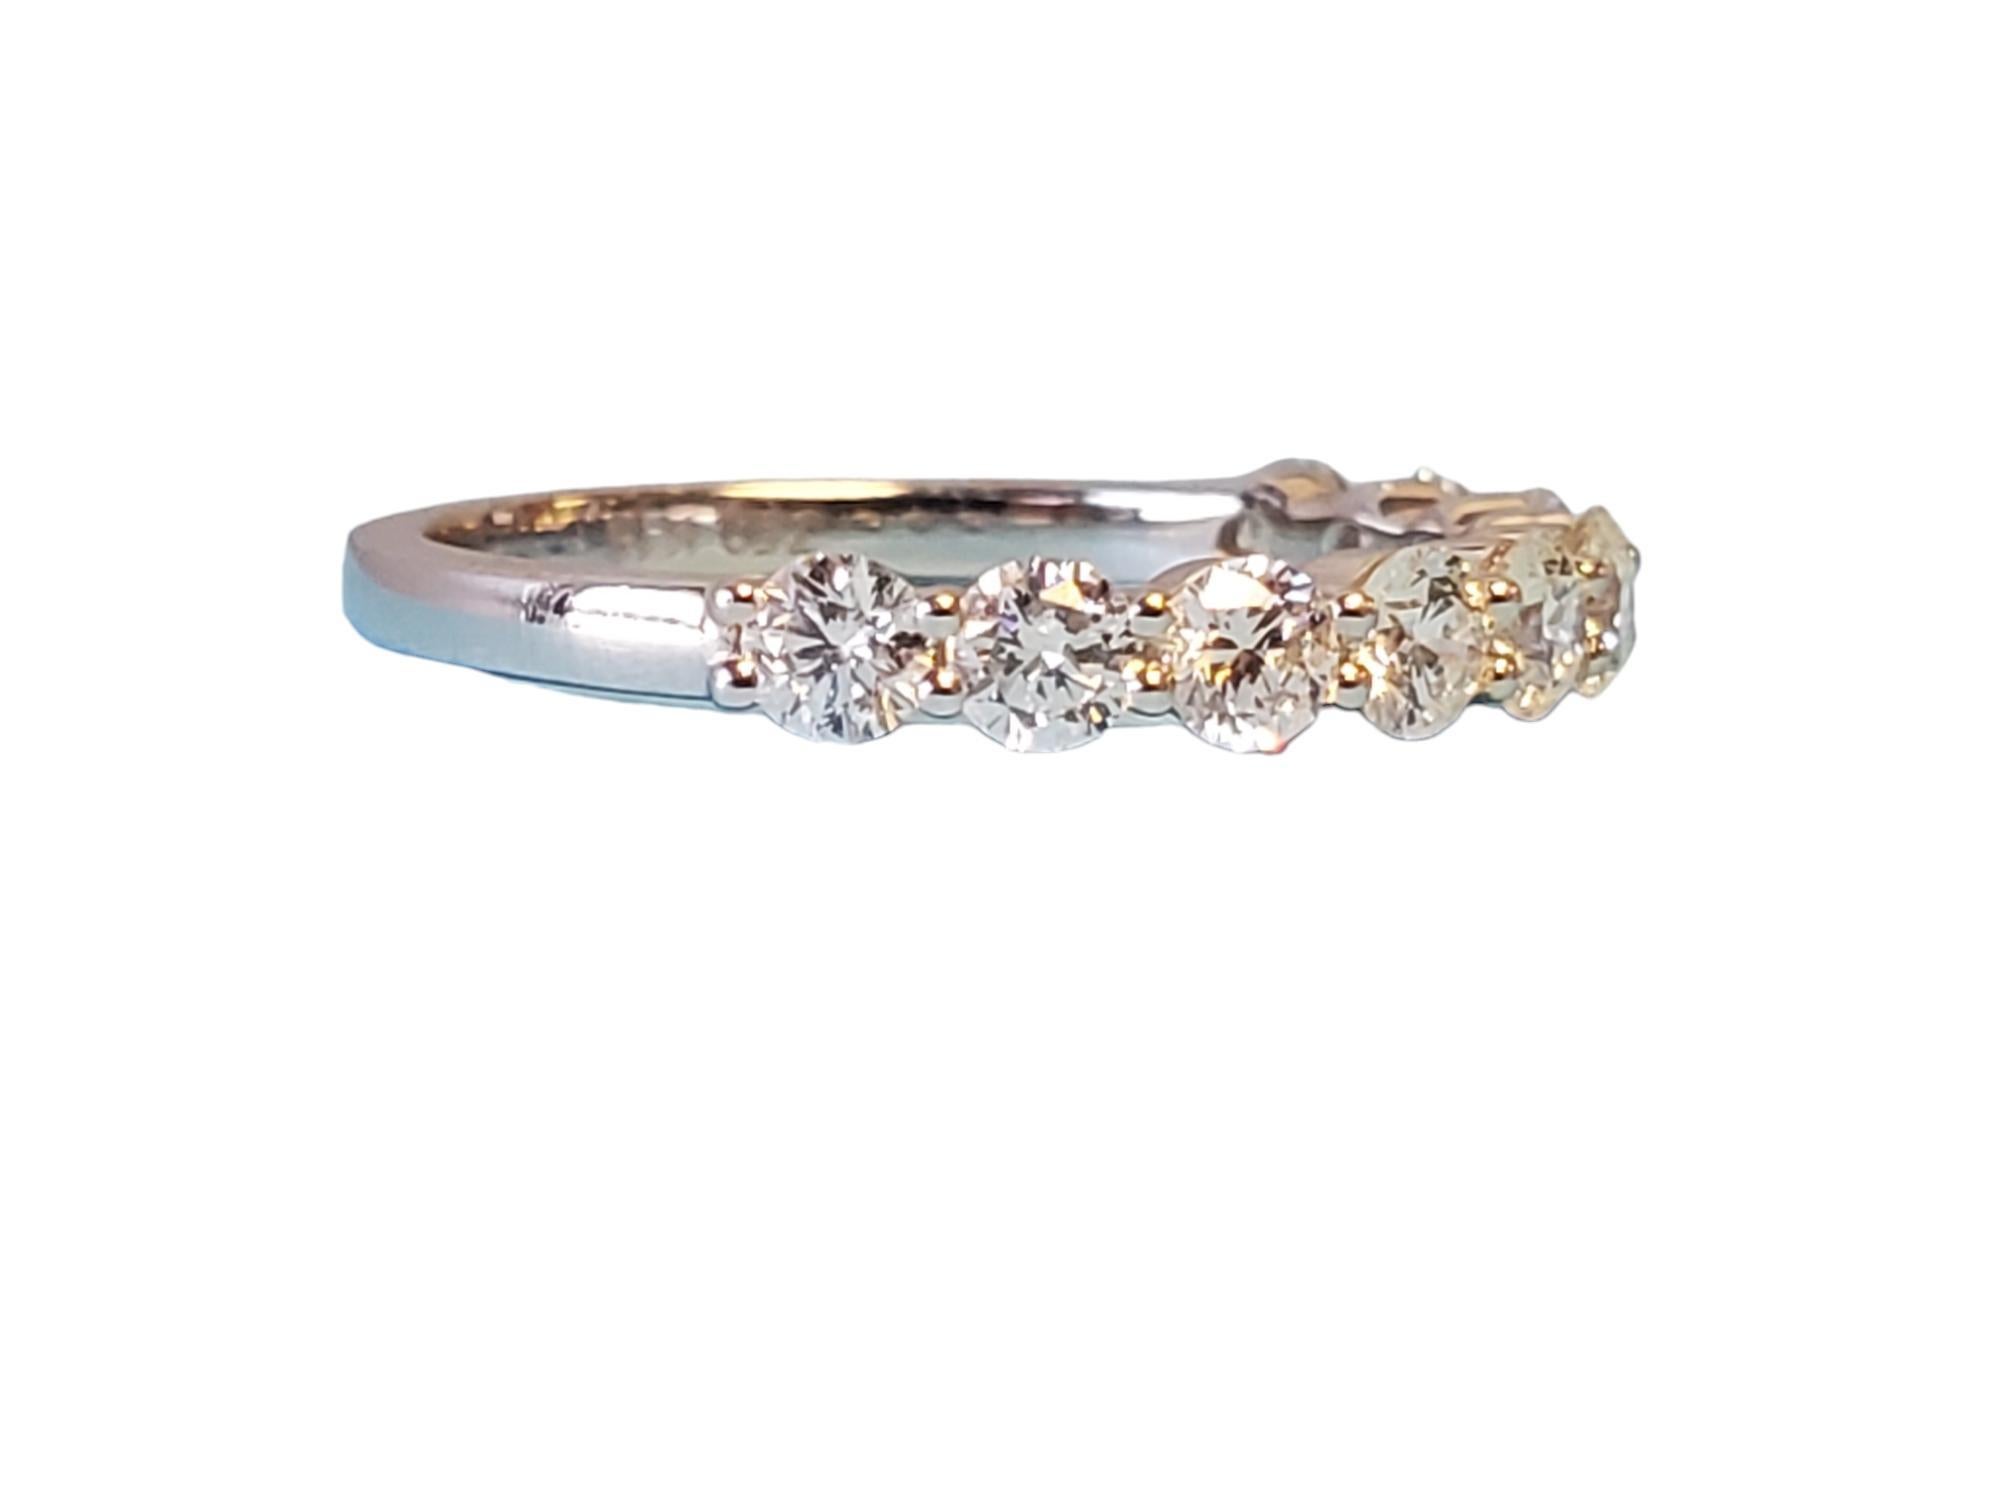 Demi-bande d'éternité en or blanc 18k - pièce de fin de série. Inchangé, magnifique bracelet demi-éternité. Ce bracelet est orné de diamants blancs de 1.00tcw qui présentent un aspect brillant et scintillant. La taille est 6.5, prêt à porter.